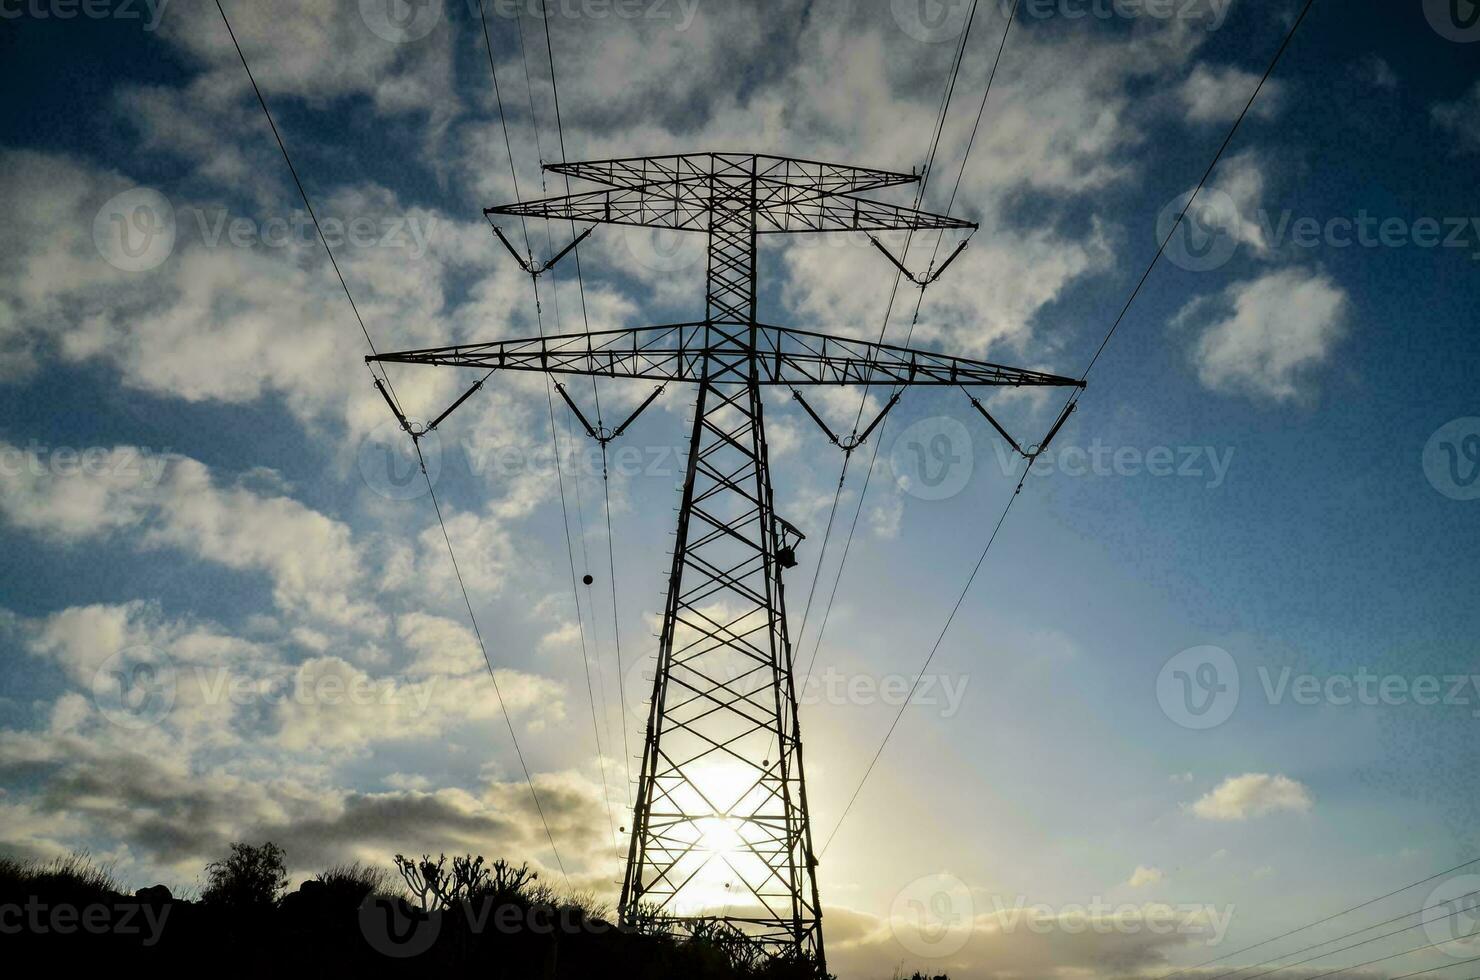 elektrisch macht pylonen foto